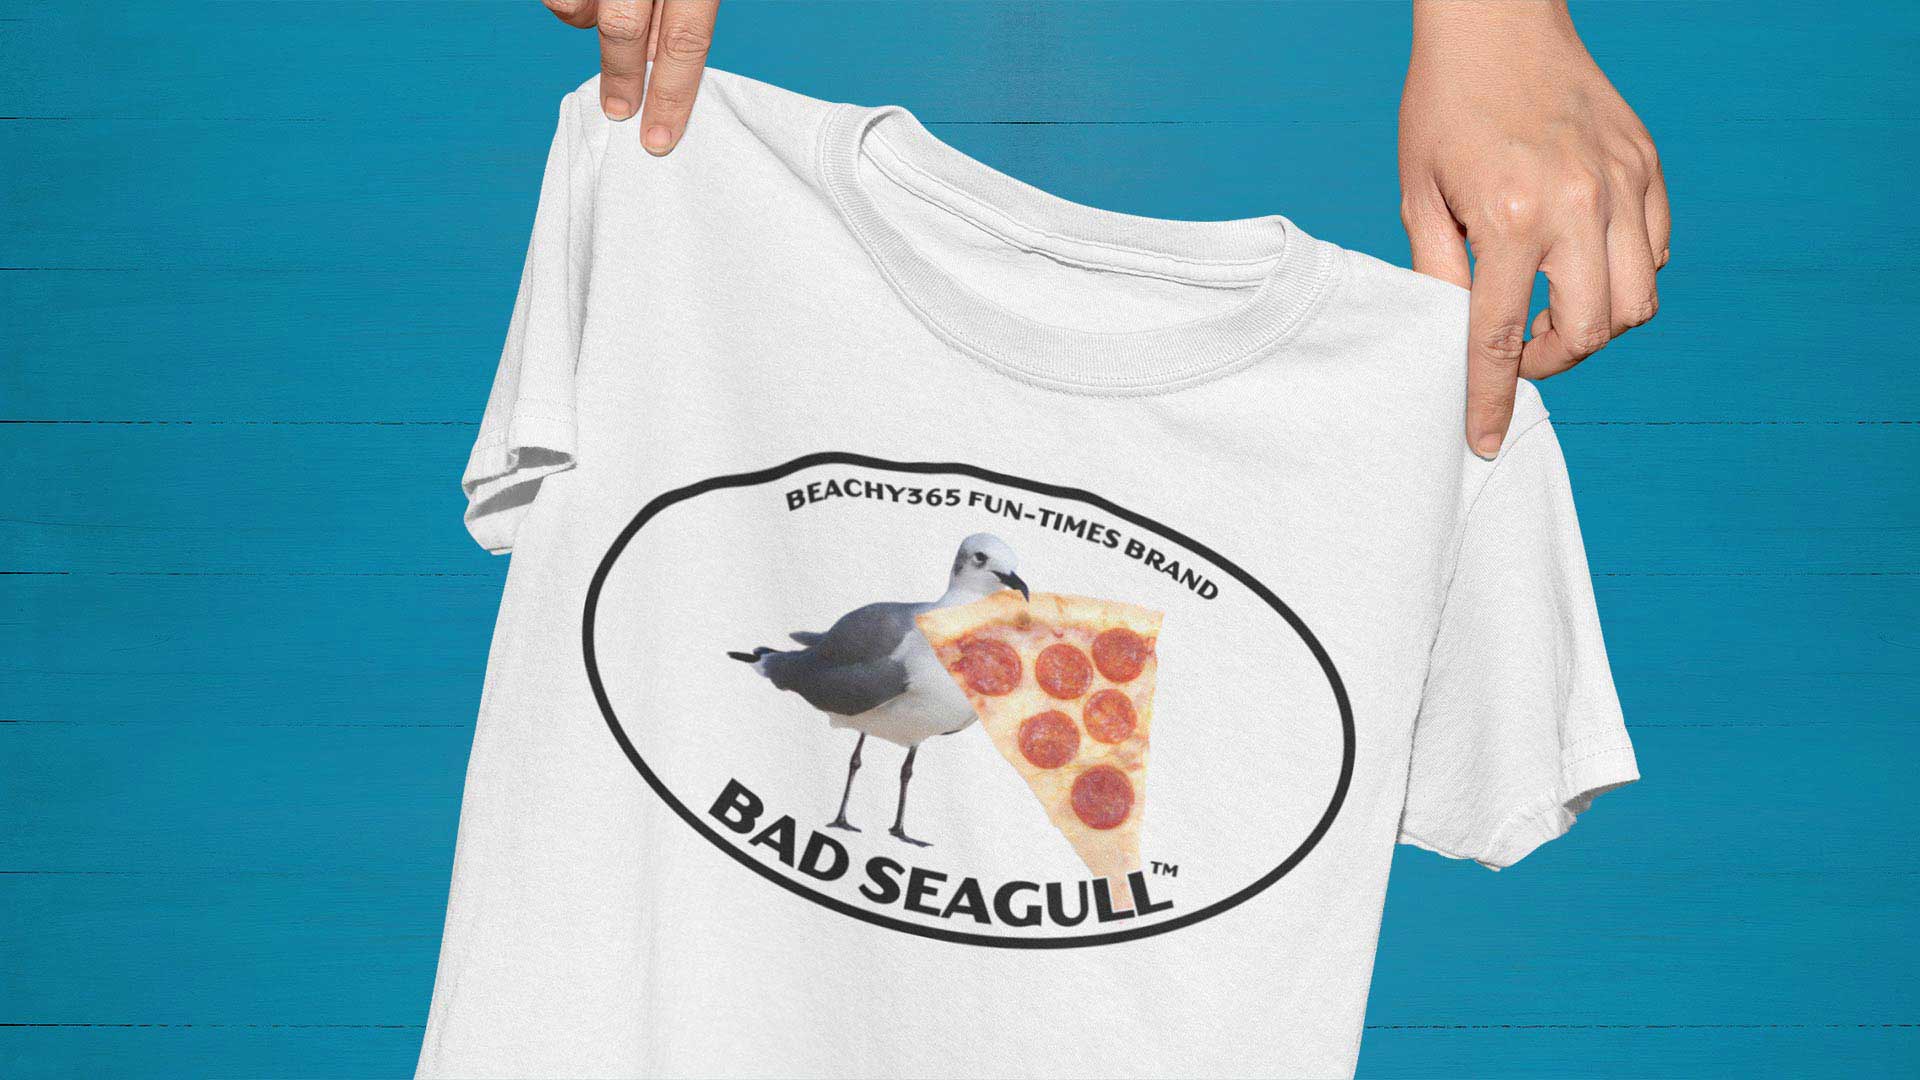 Bad Seagull Tees, Hoodies, Bags & More